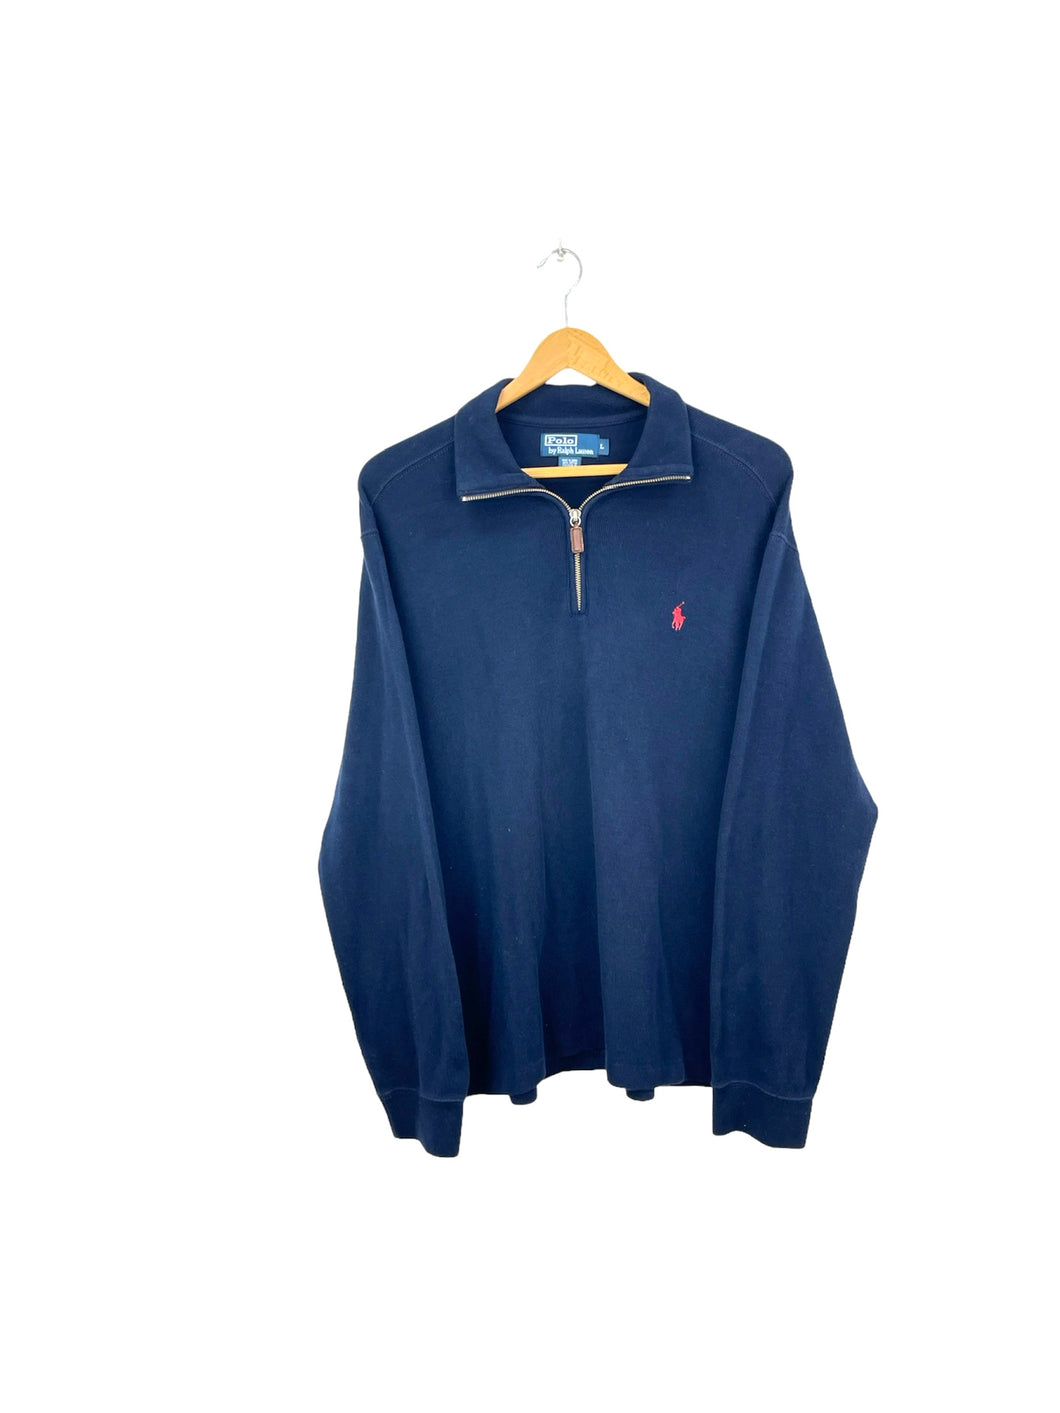 Ralph Lauren 1/4 Zip Sweatshirt - Large